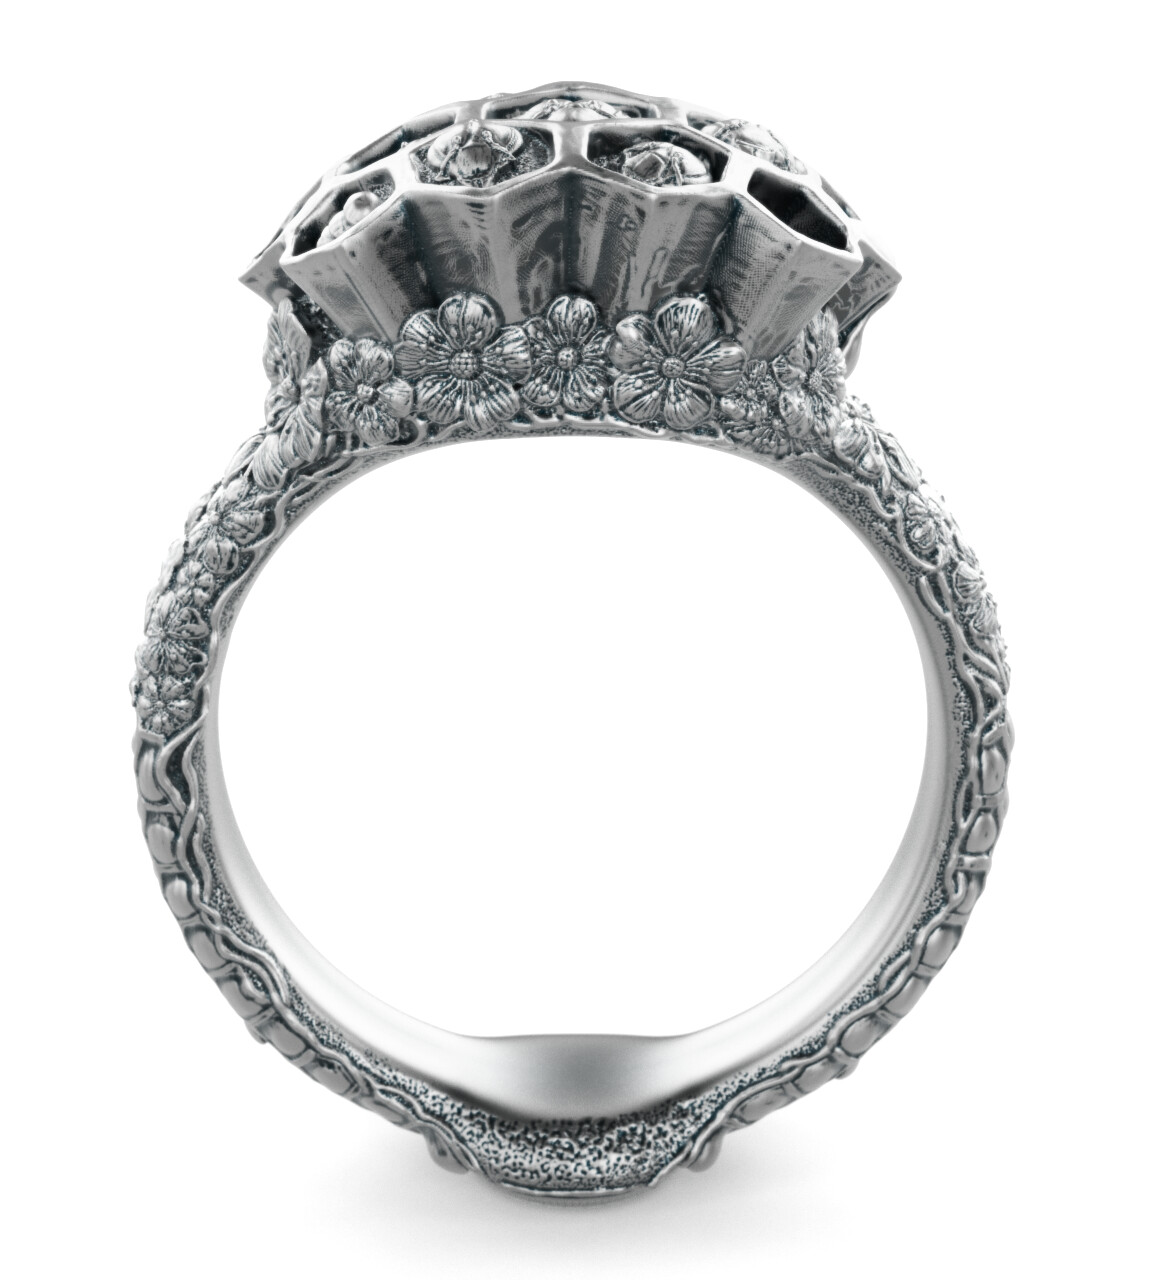 Earlier version of the ring rendered in Keyshot